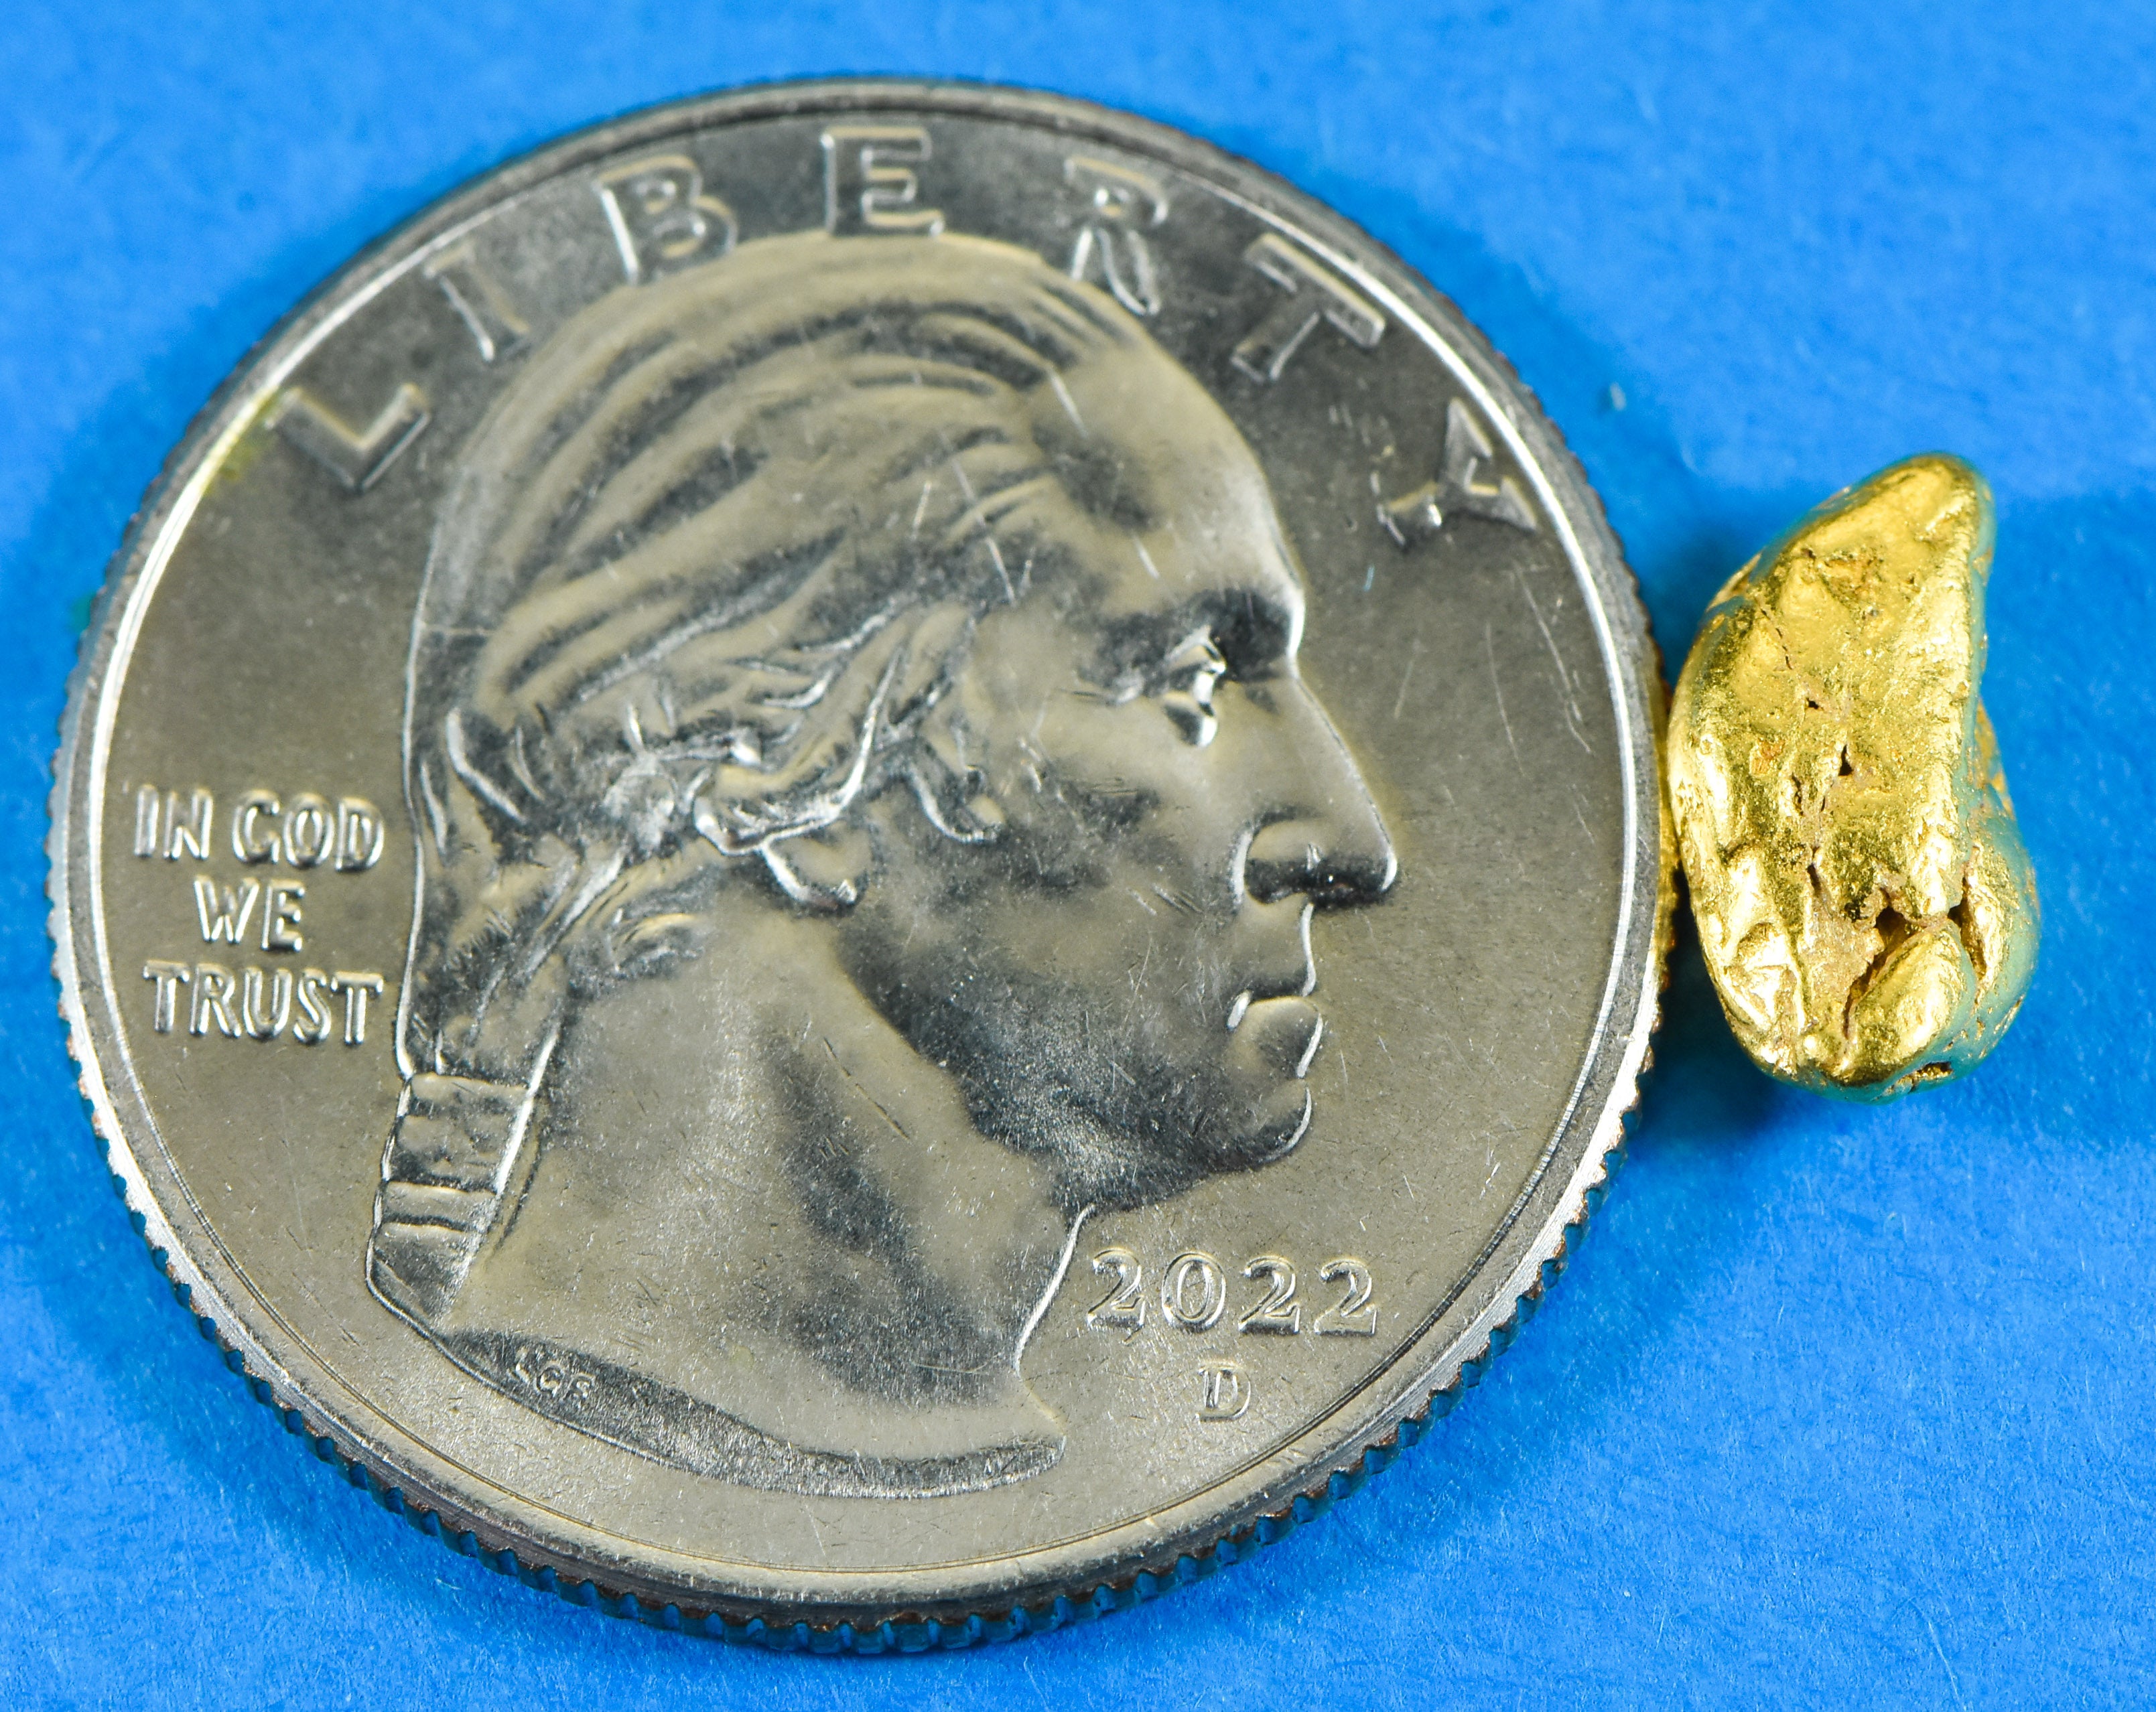 #12 Alaskan BC Natural Gold Nugget 1.49 Grams Genuine